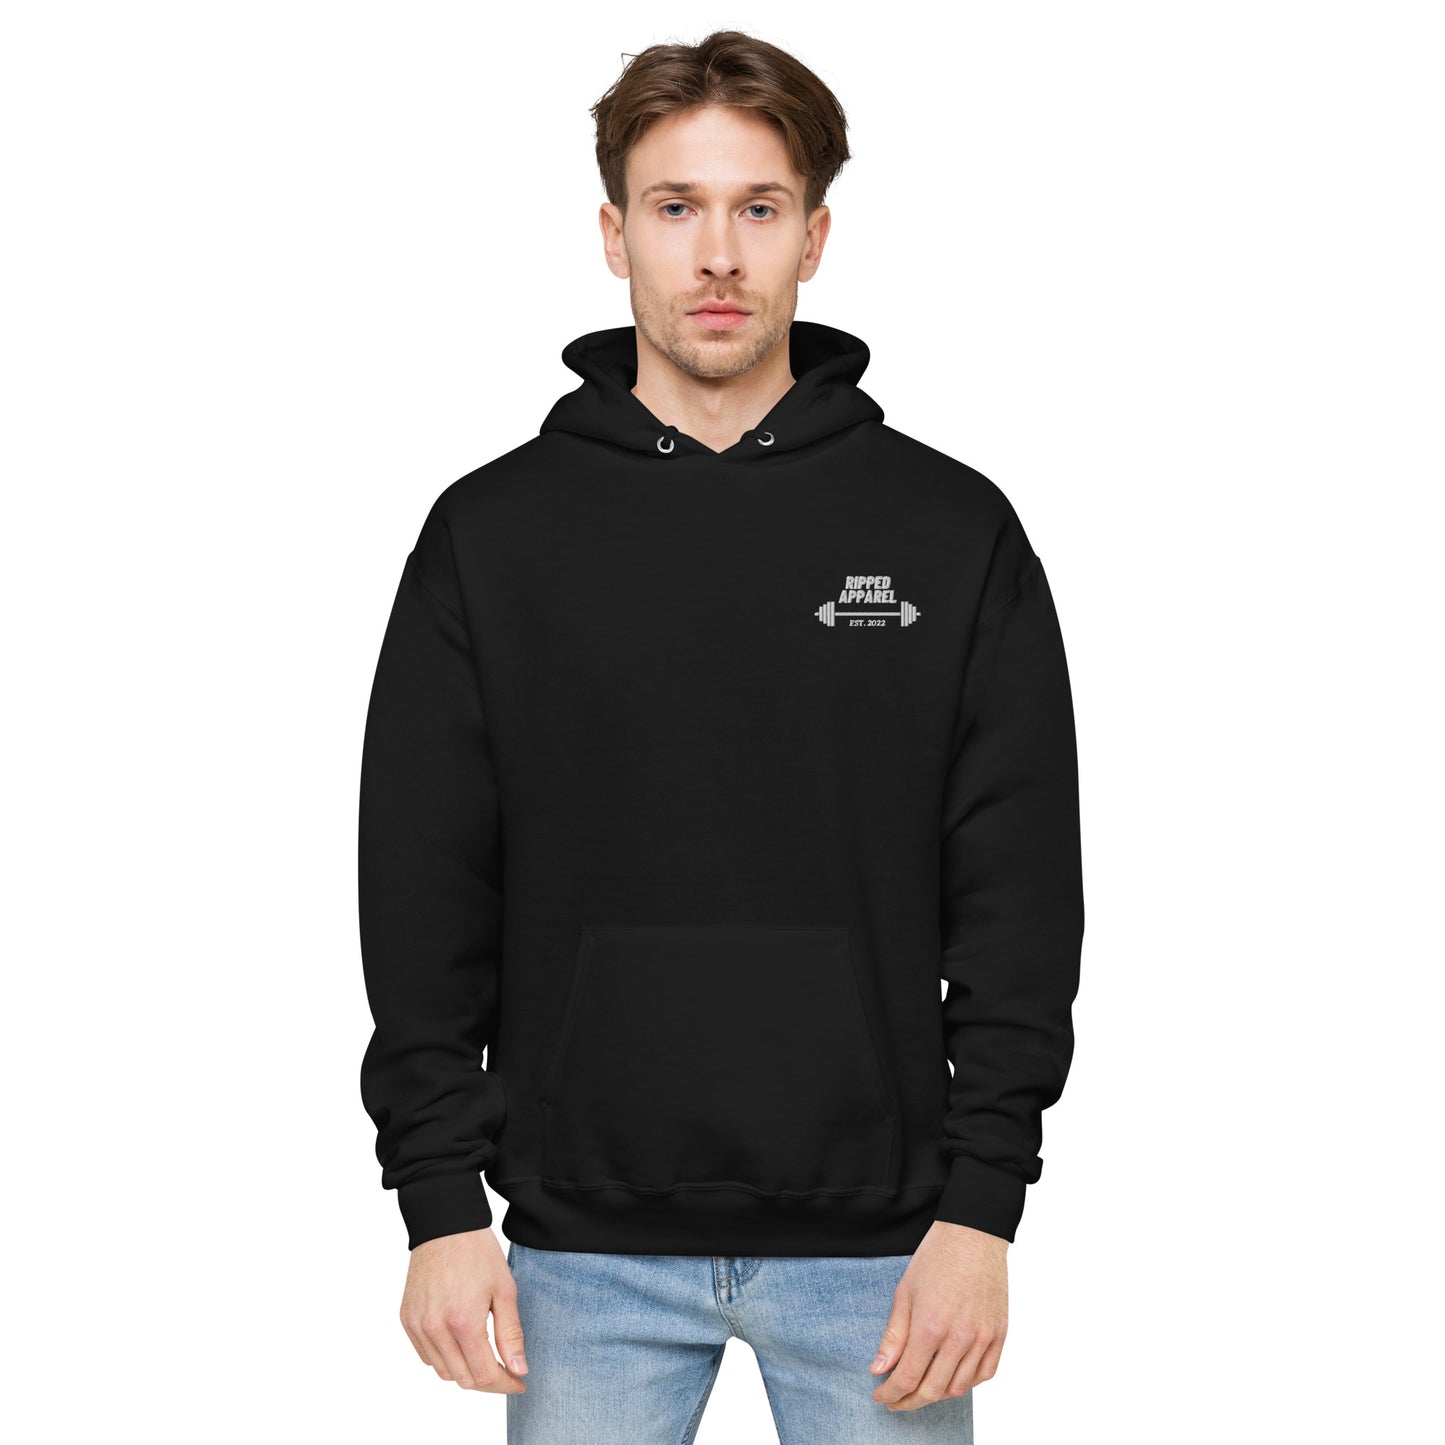 https://rippedapparel.net/cdn/shop/products/unisex-fleece-hoodie-black-front-629d622da6196.jpg?v=1654481475&width=1445